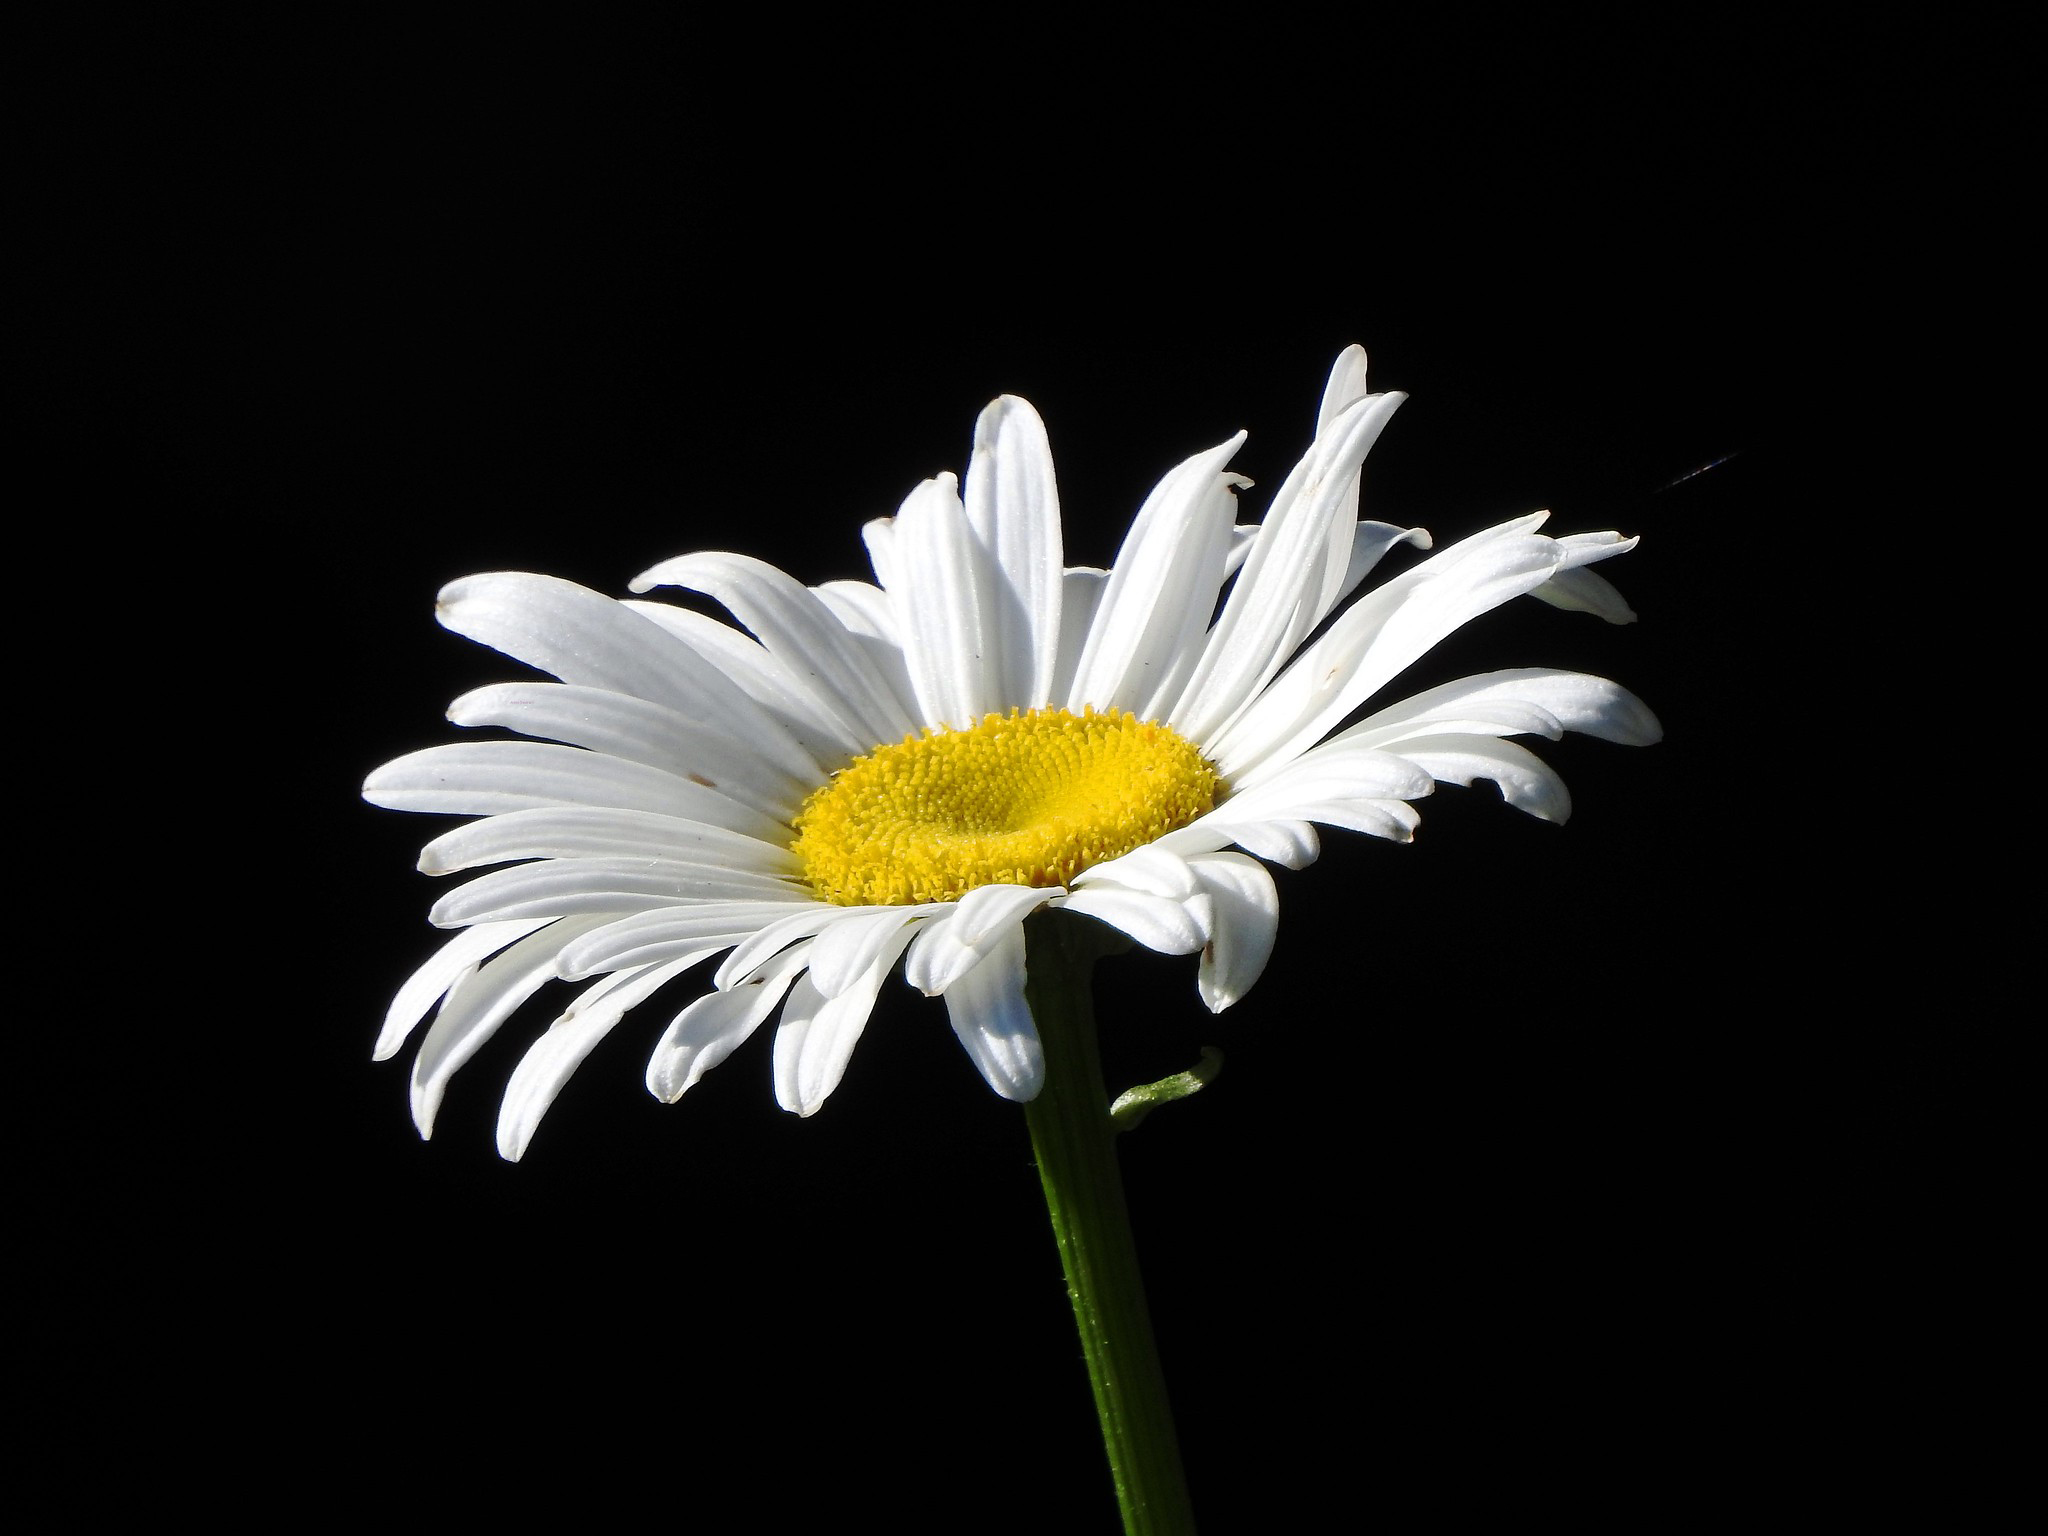 Hình nền Hoa Cúc Trắng Với Những Giọt Nước Trên Nền đen, Một Bông Hoa Cúc  Trắng Với Một Giọt Nước Hiện Ra Từ Bóng Tối, ảnh Chụp ảnh Hd Background  Vector